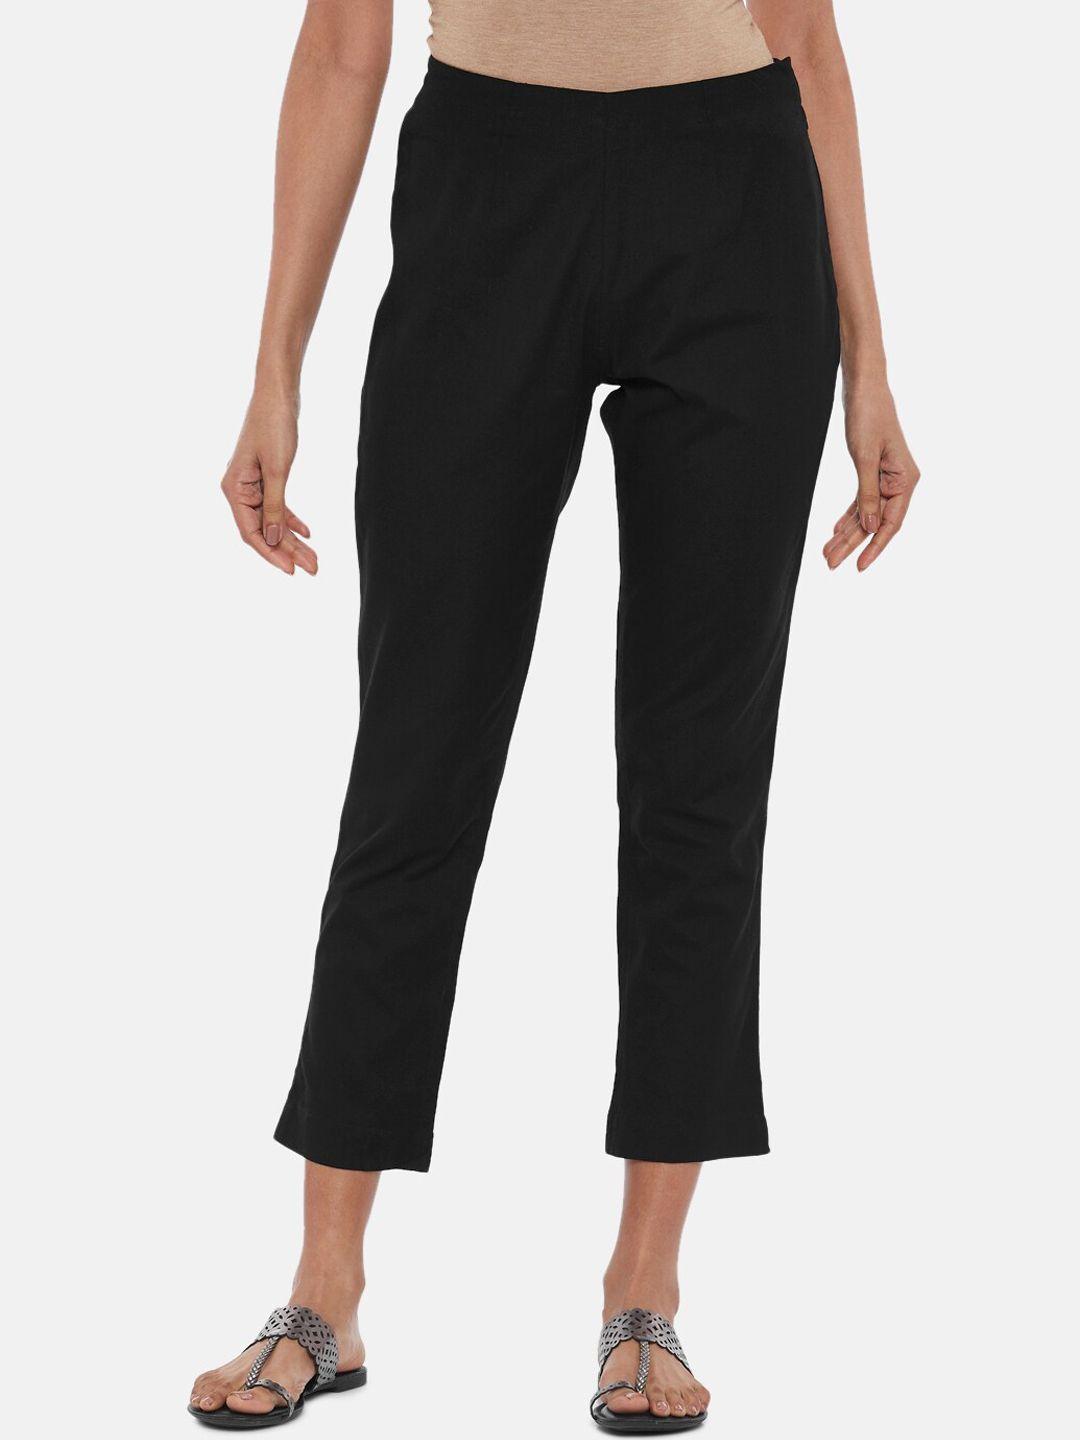 rangmanch by pantaloons women black pure cotton trousers